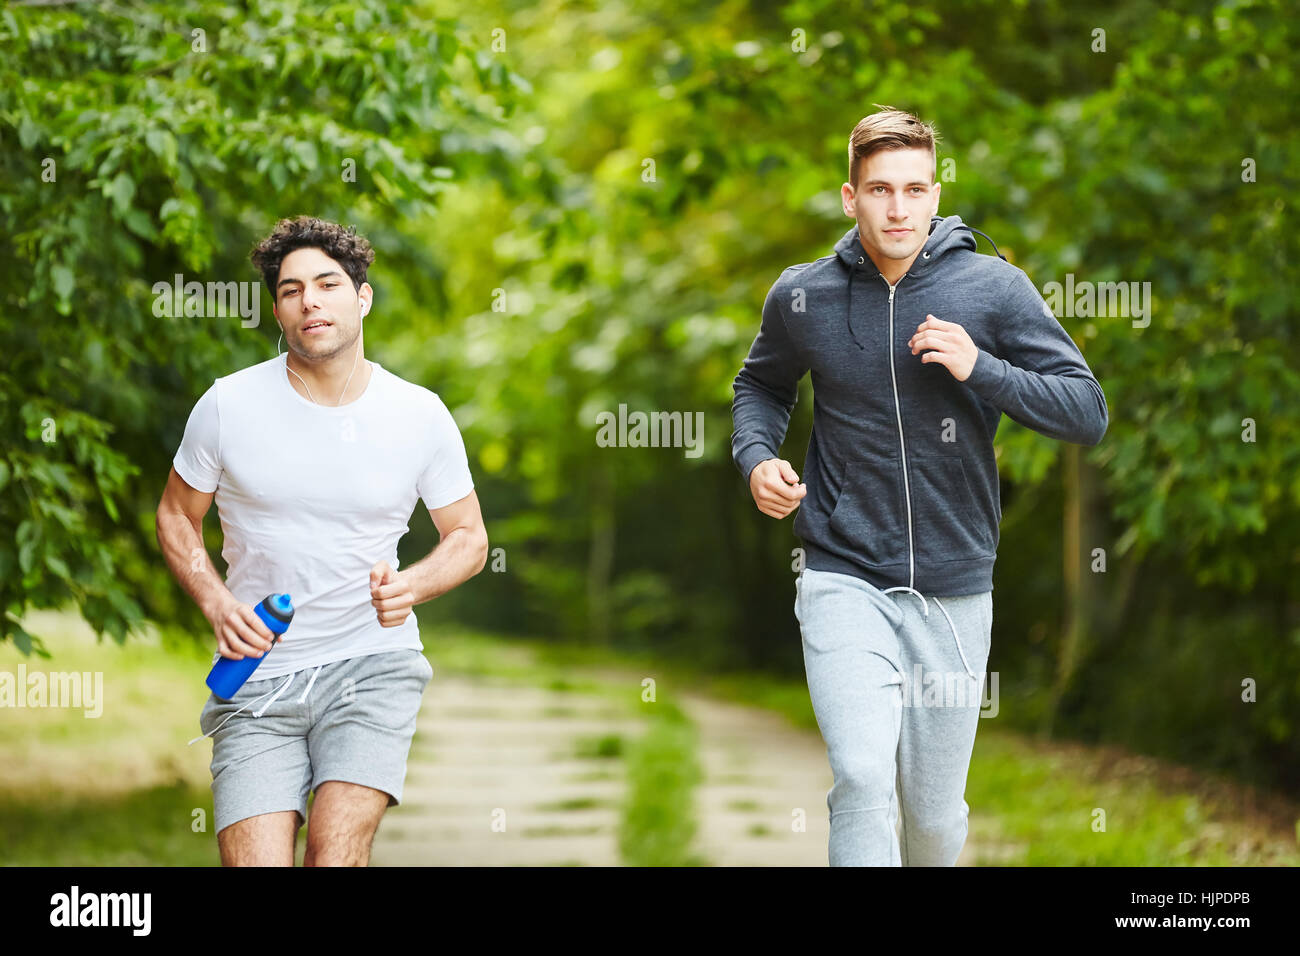 Zwei junge Männer, die laufen im park Stockfoto